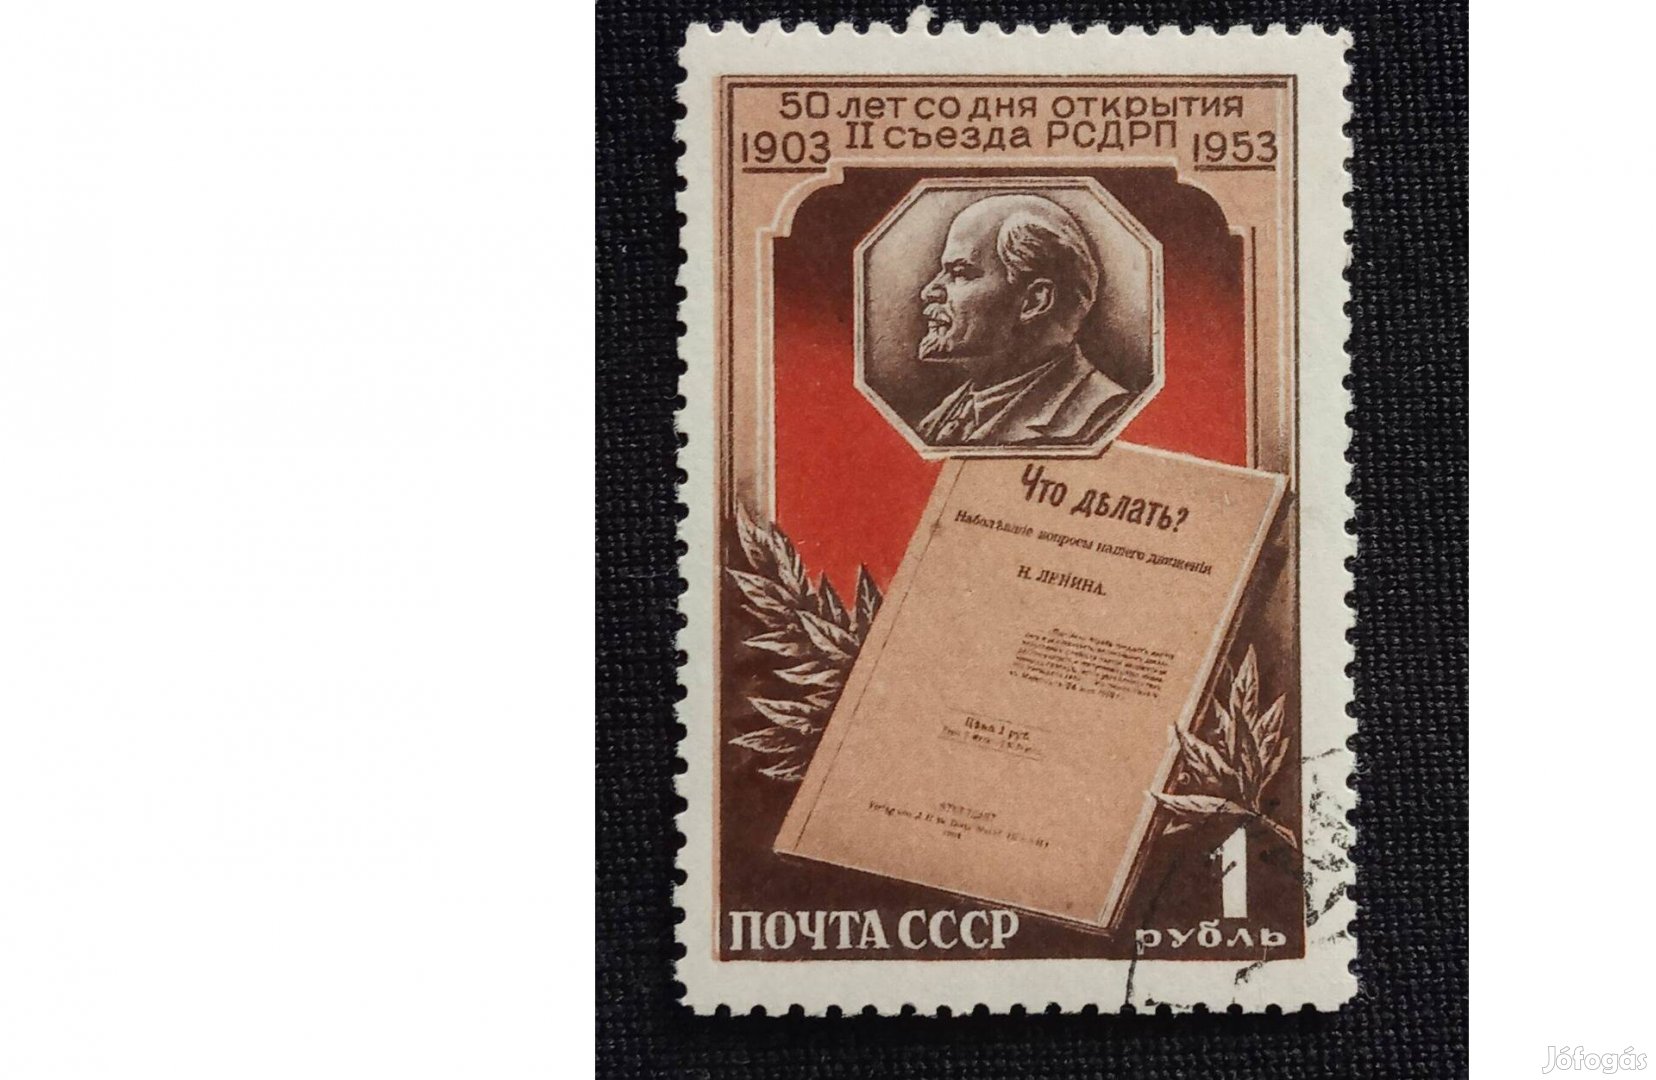 1953. A második orosz szociáldemokrata kongresszus 50. évfordulója